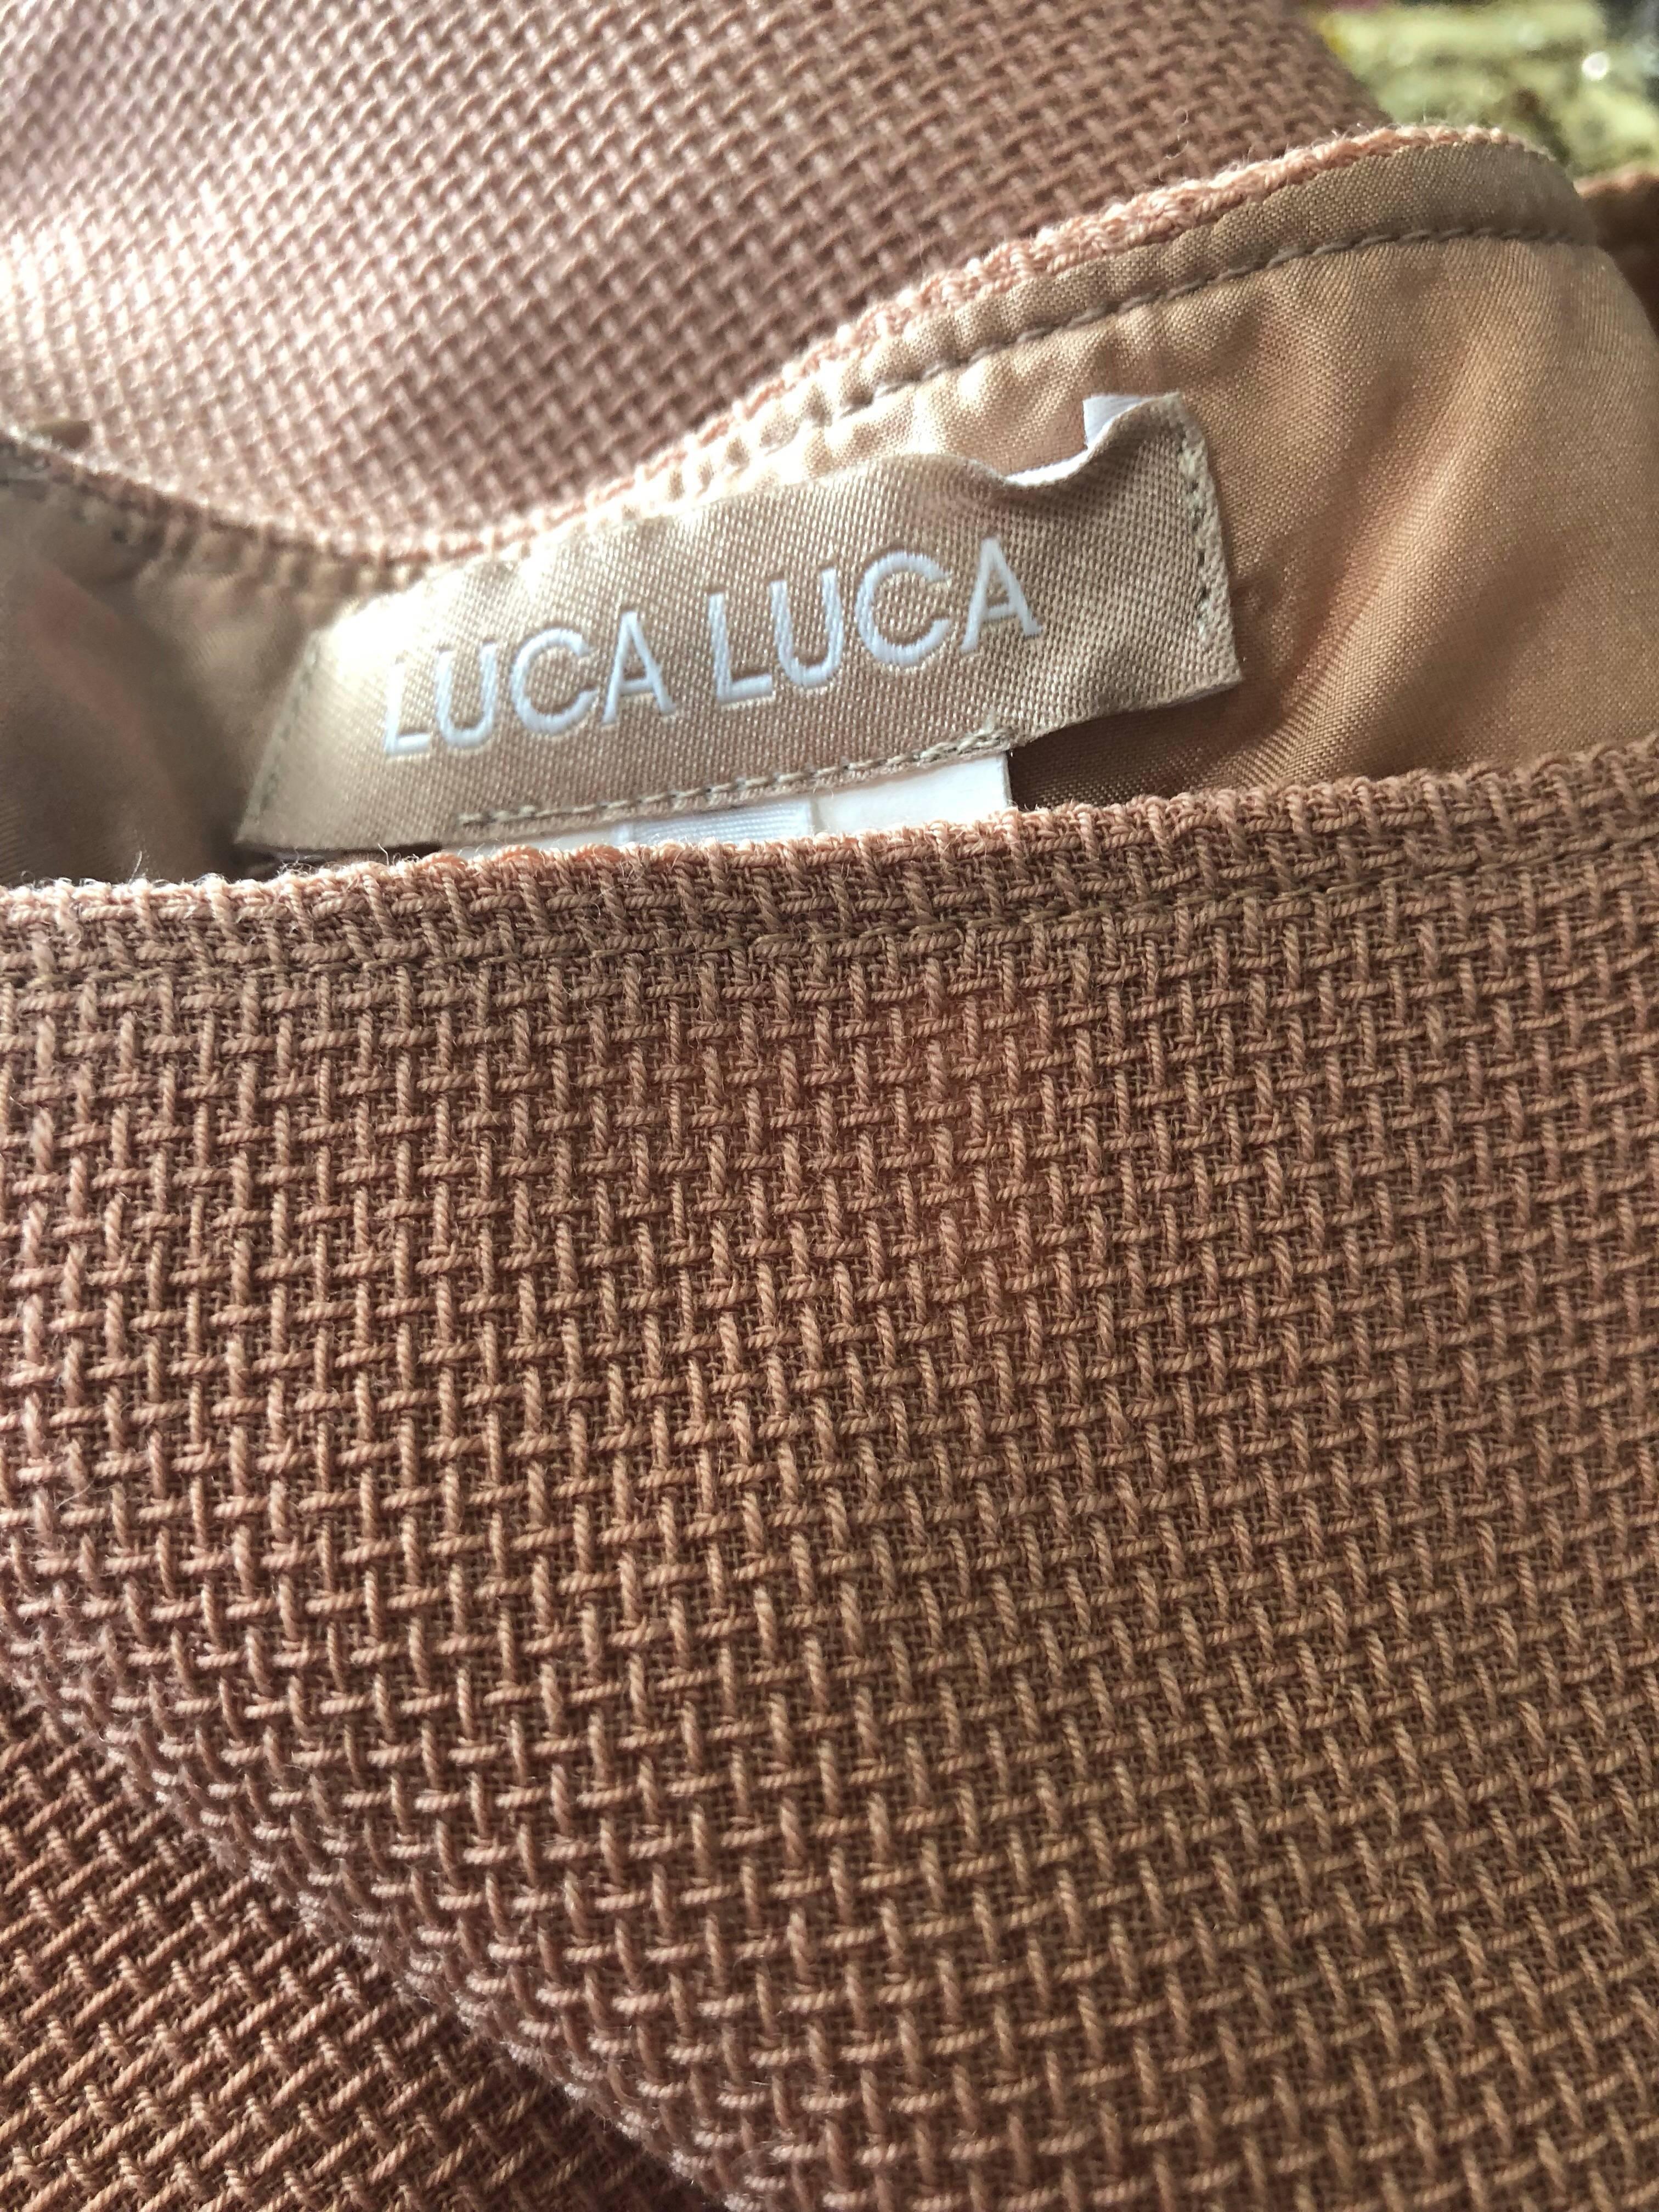 Luca Luca 1990s Terra Cotta Tan Sz 8 / 10 Virgin Wool Italian Vintage 90s Dress For Sale 2